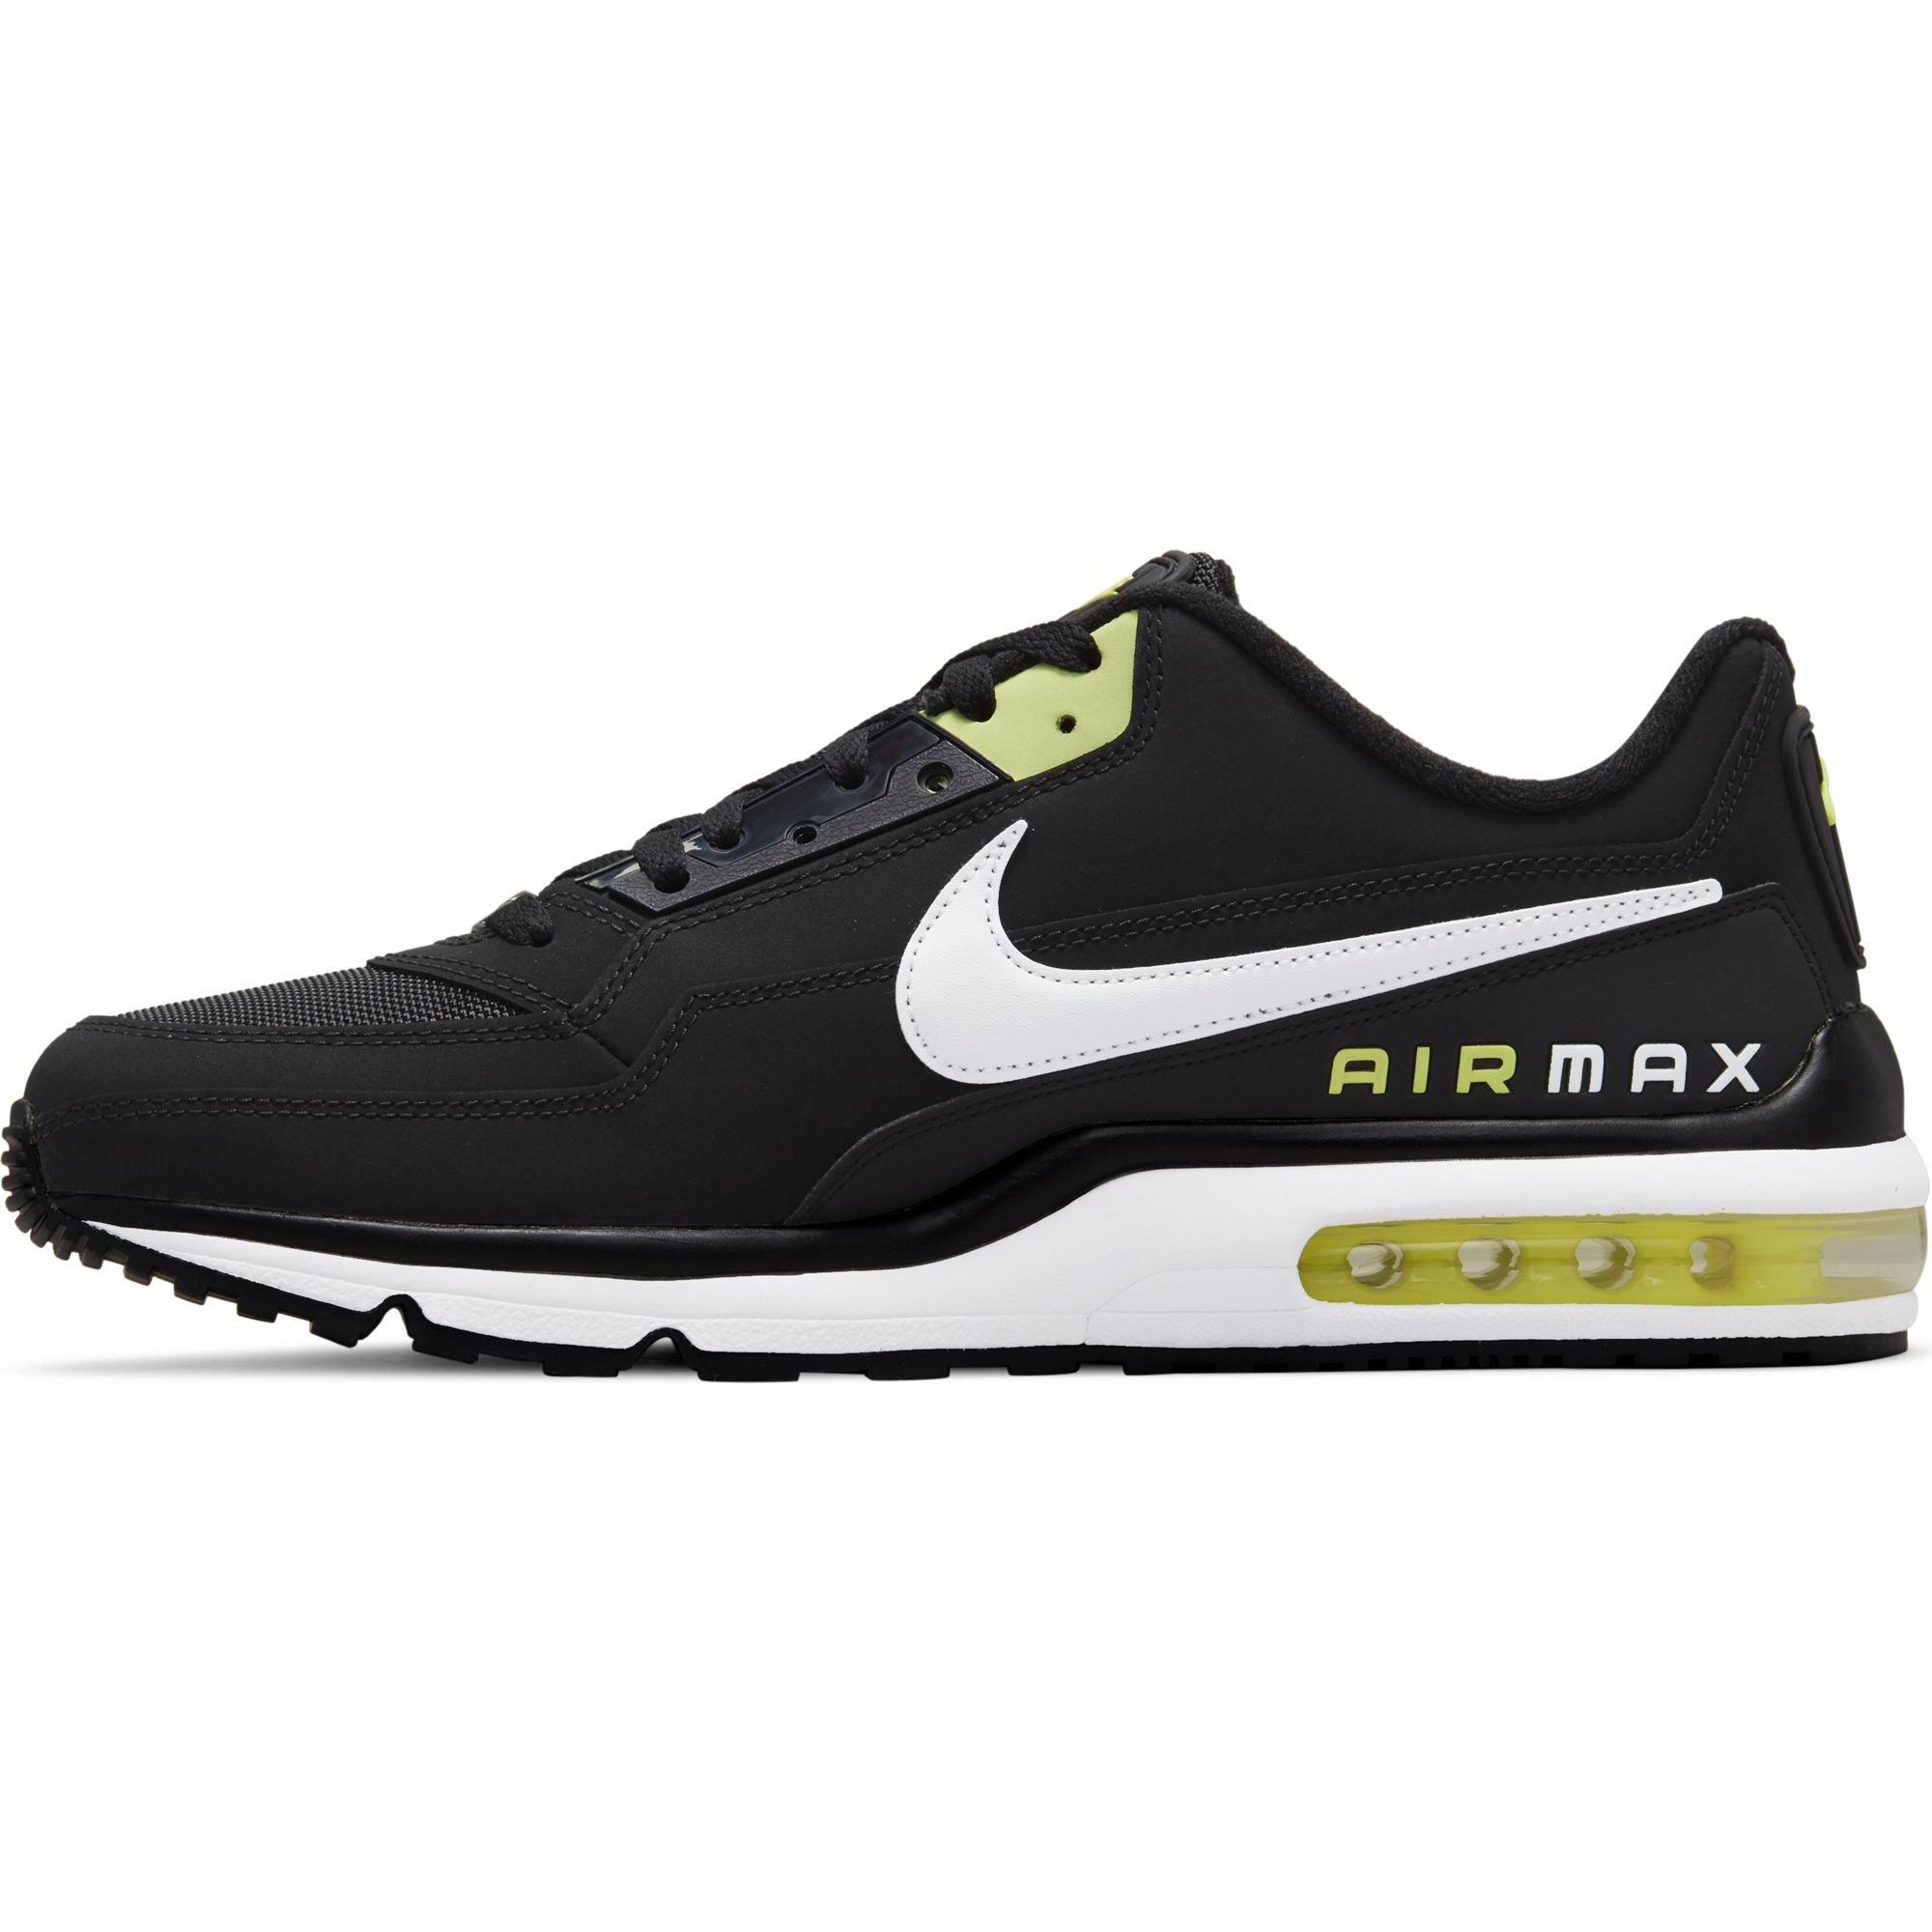 Nike Max LTD 3 "Black/White/Lt Lemon Men's